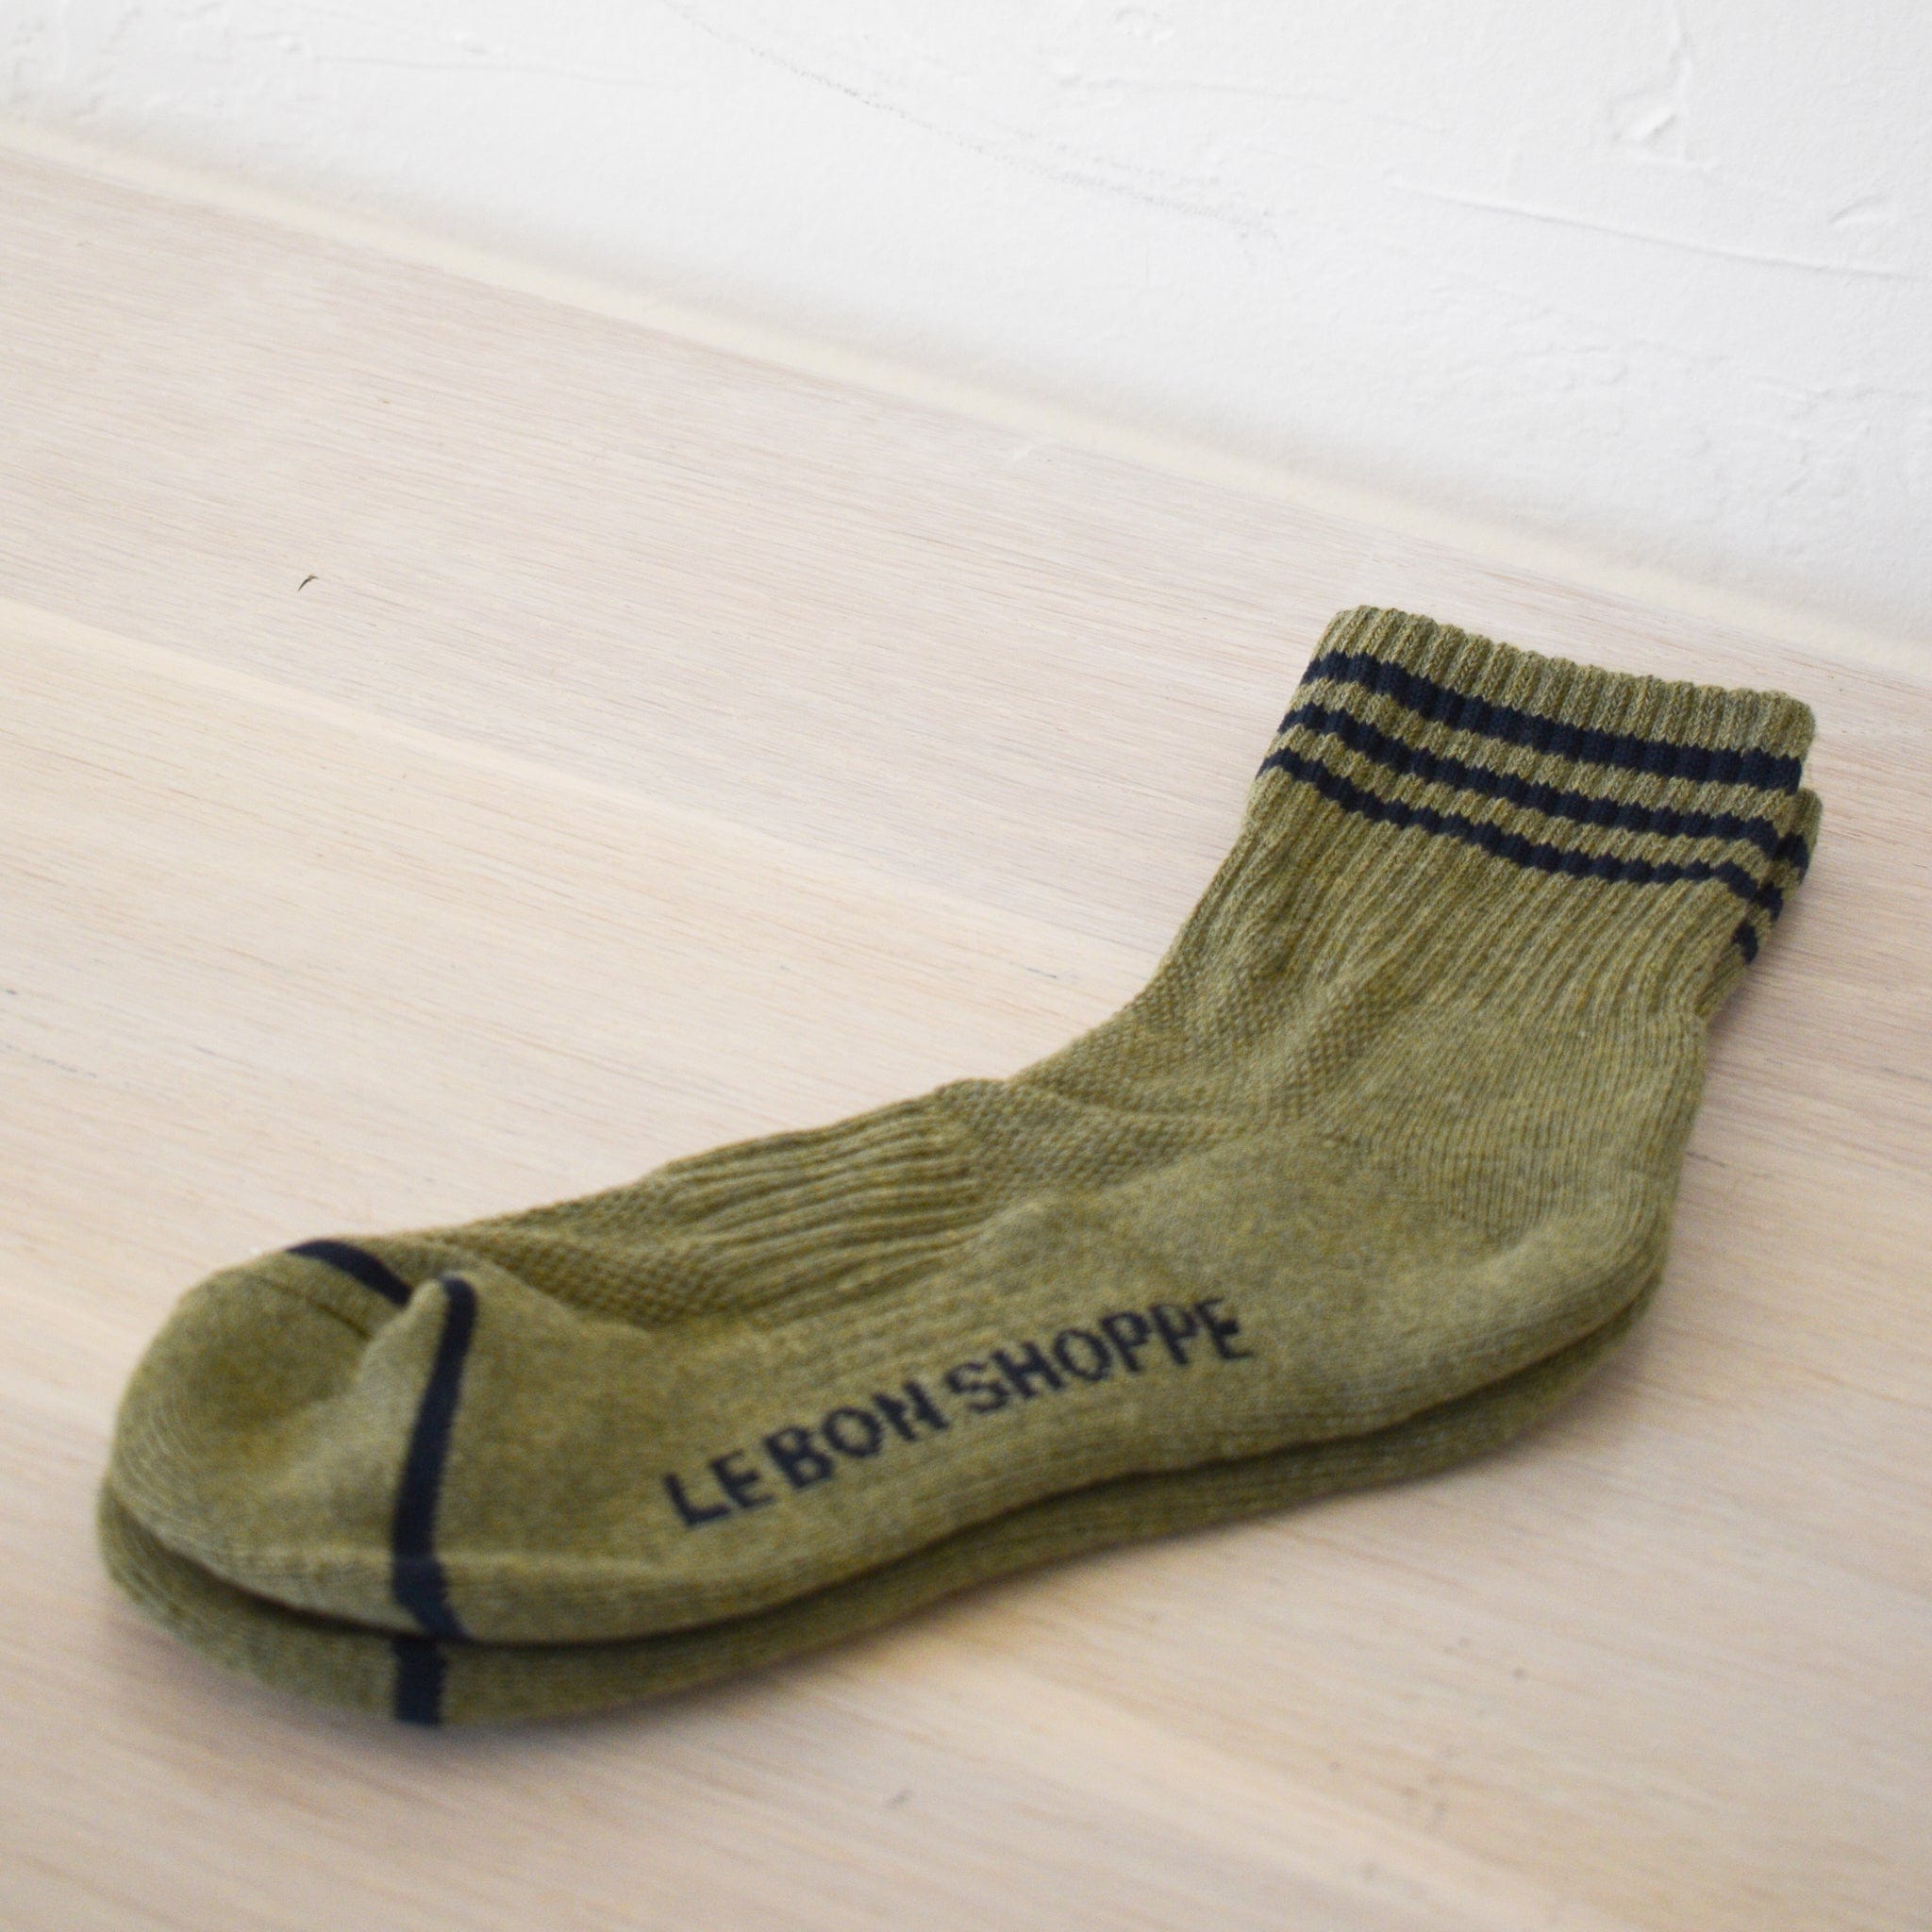 Le Bon Shoppe socks Sage Le Bon "Girlfriend" Socks